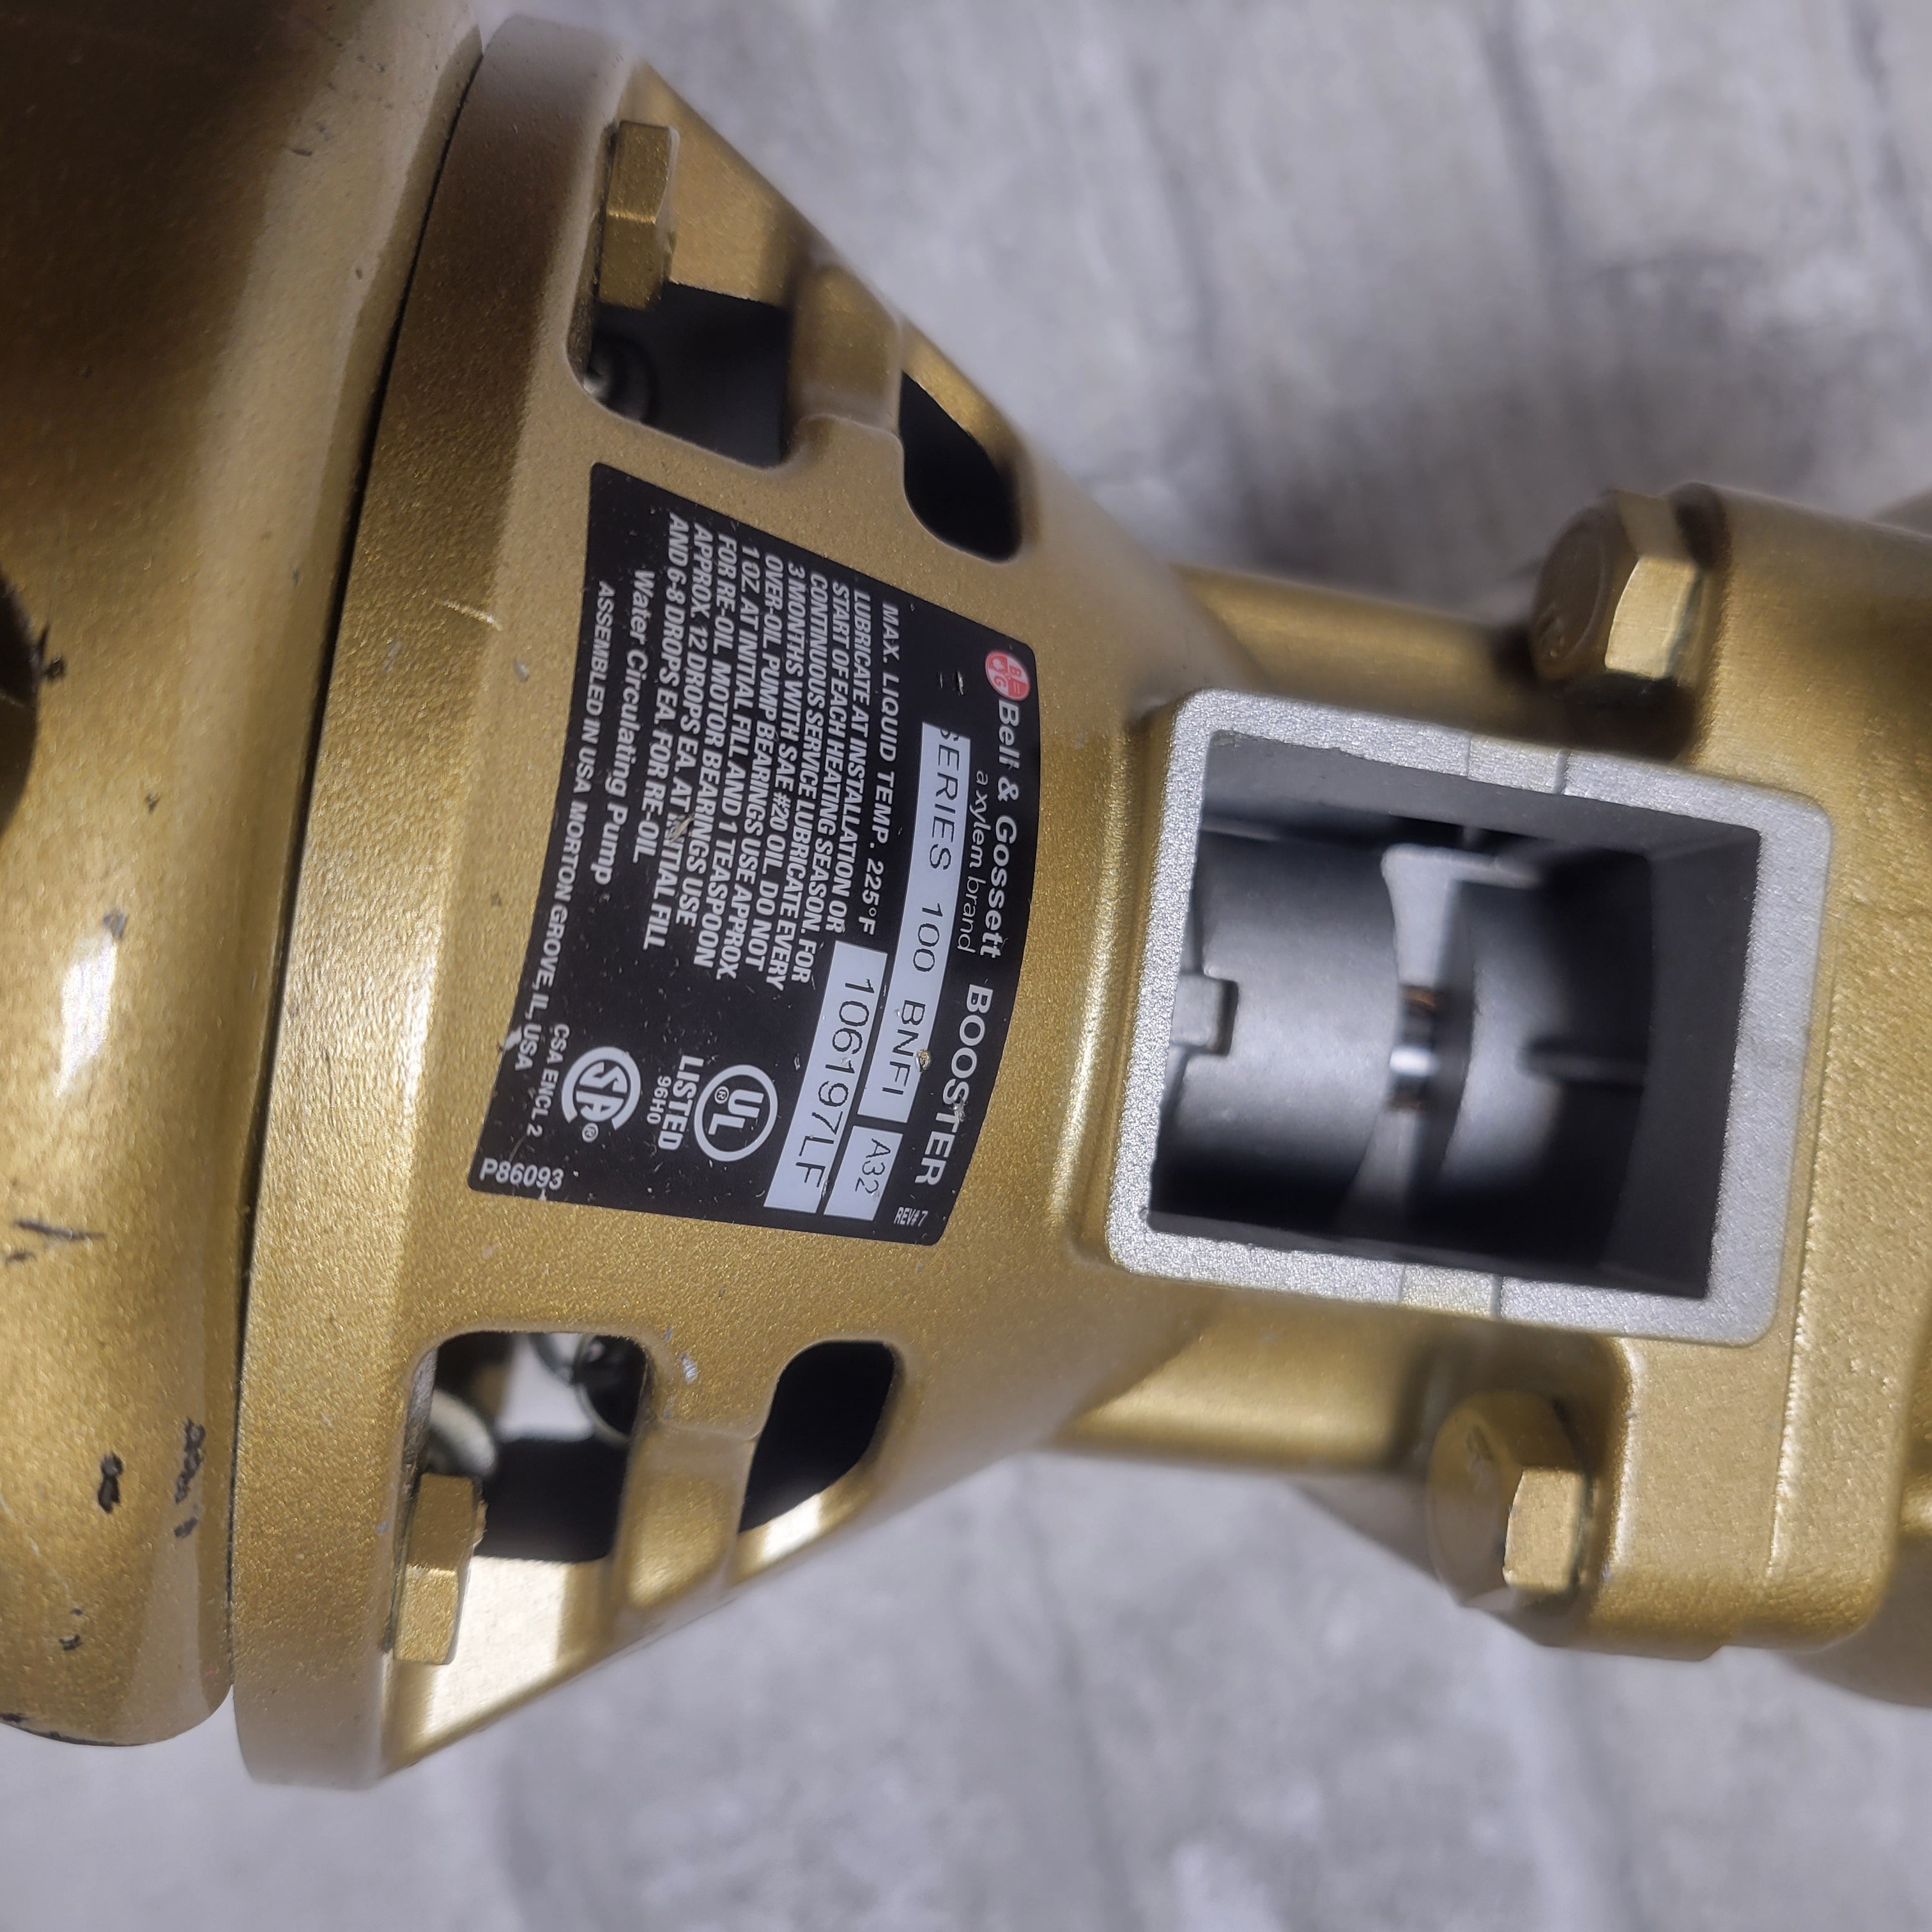 Bell & Gossett 100 BNFI H99 Bronze Booster Pump 1/12HP 1725RPM 115V *PARTS* (8069674828014)